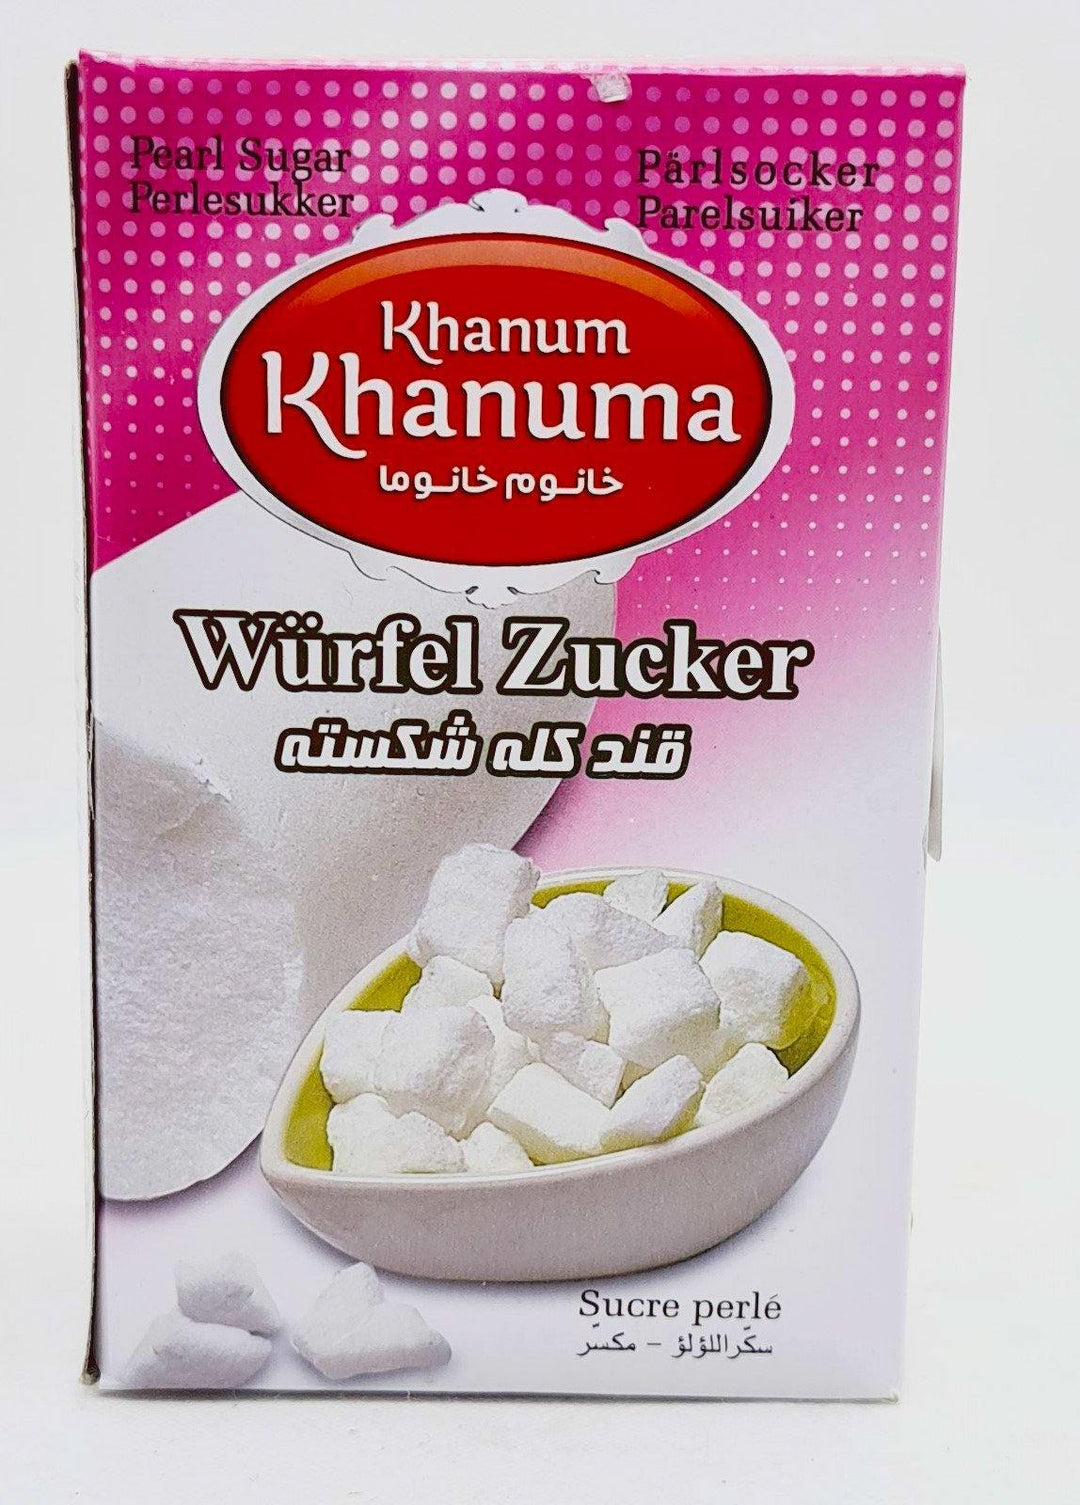 Khanum Khanuma Ghand Habehei - kubischer Zucker 350g - Persienmarkt